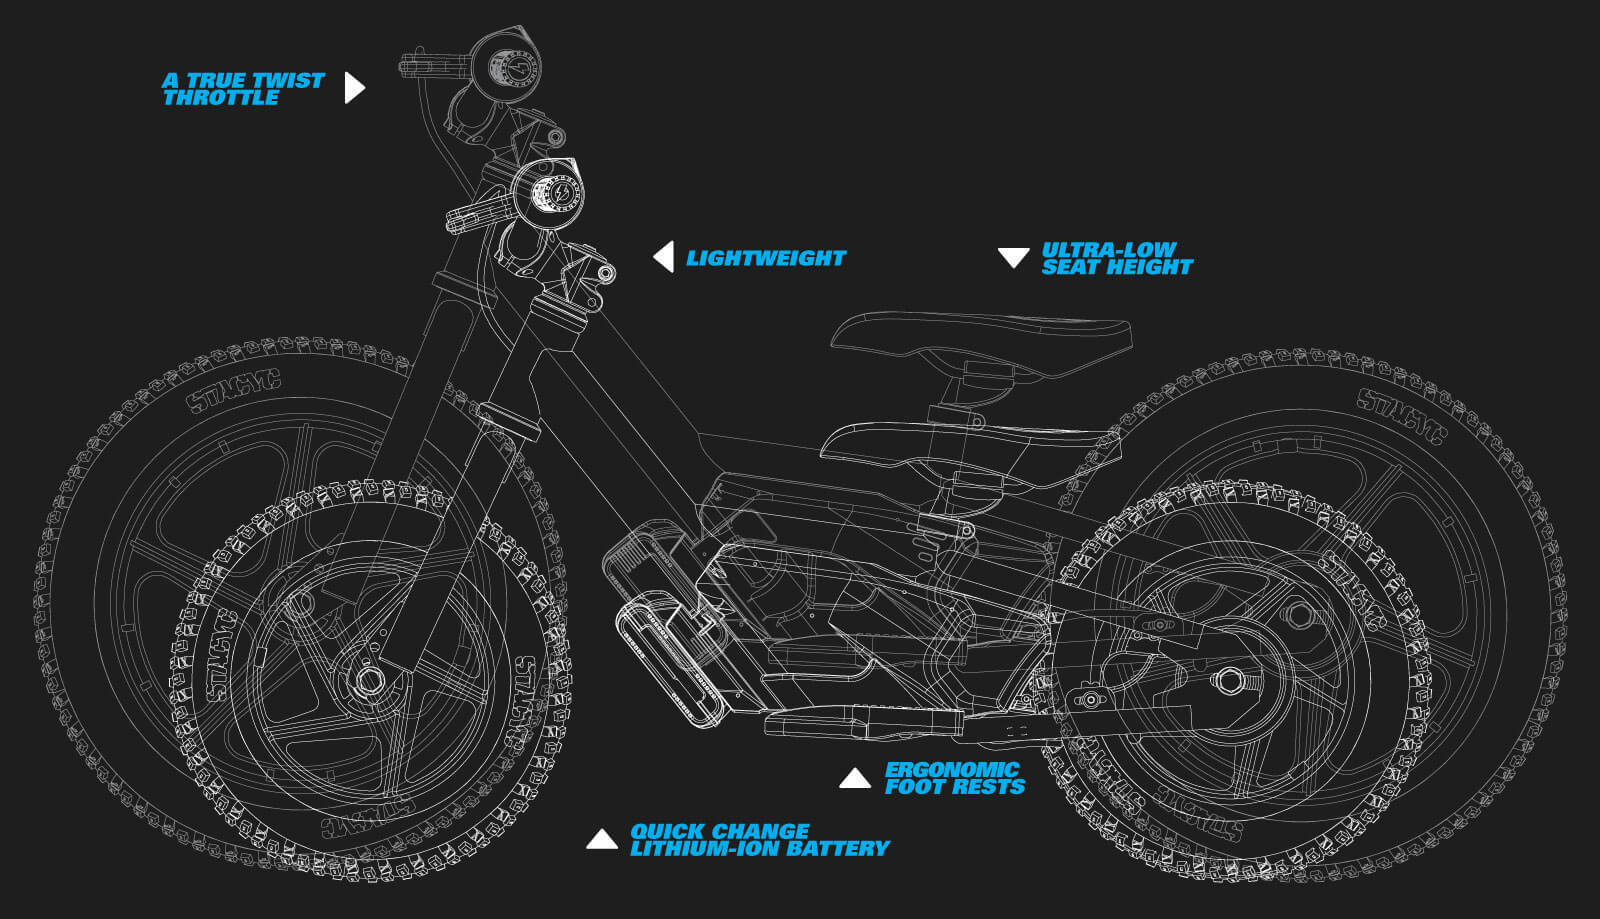 Draisiennes KTM Stacyc : les tous premiers tours de roues en Ready To Race  - Moto-Station